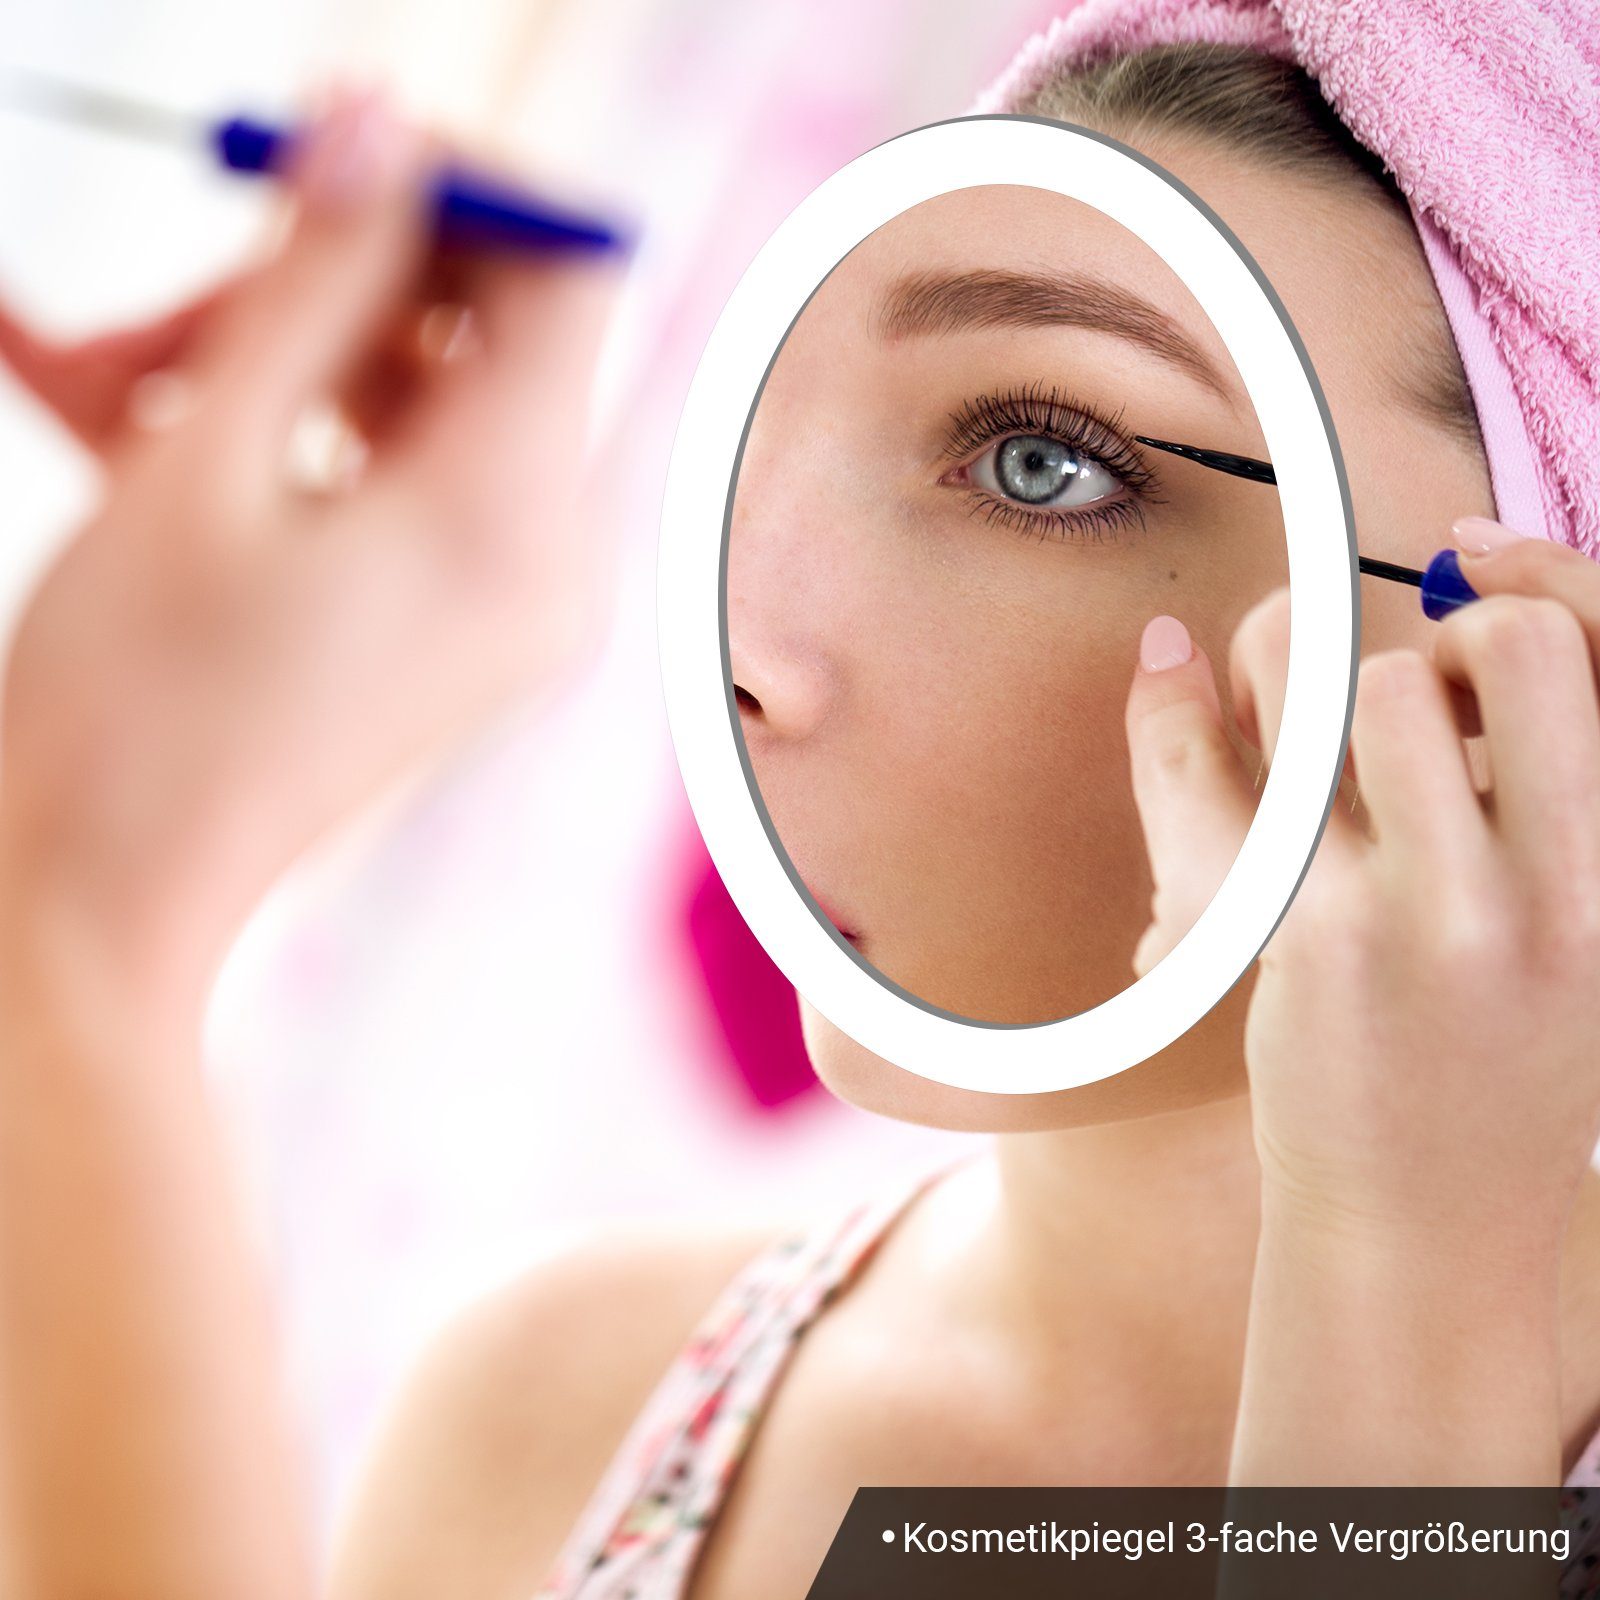 LED Kosmetikspiegel Aquamarin Touchschalter, Badspiegel - Digitaluhr & Uhr Badezimmerspiegel mit - Badezimmerspiegelschrank